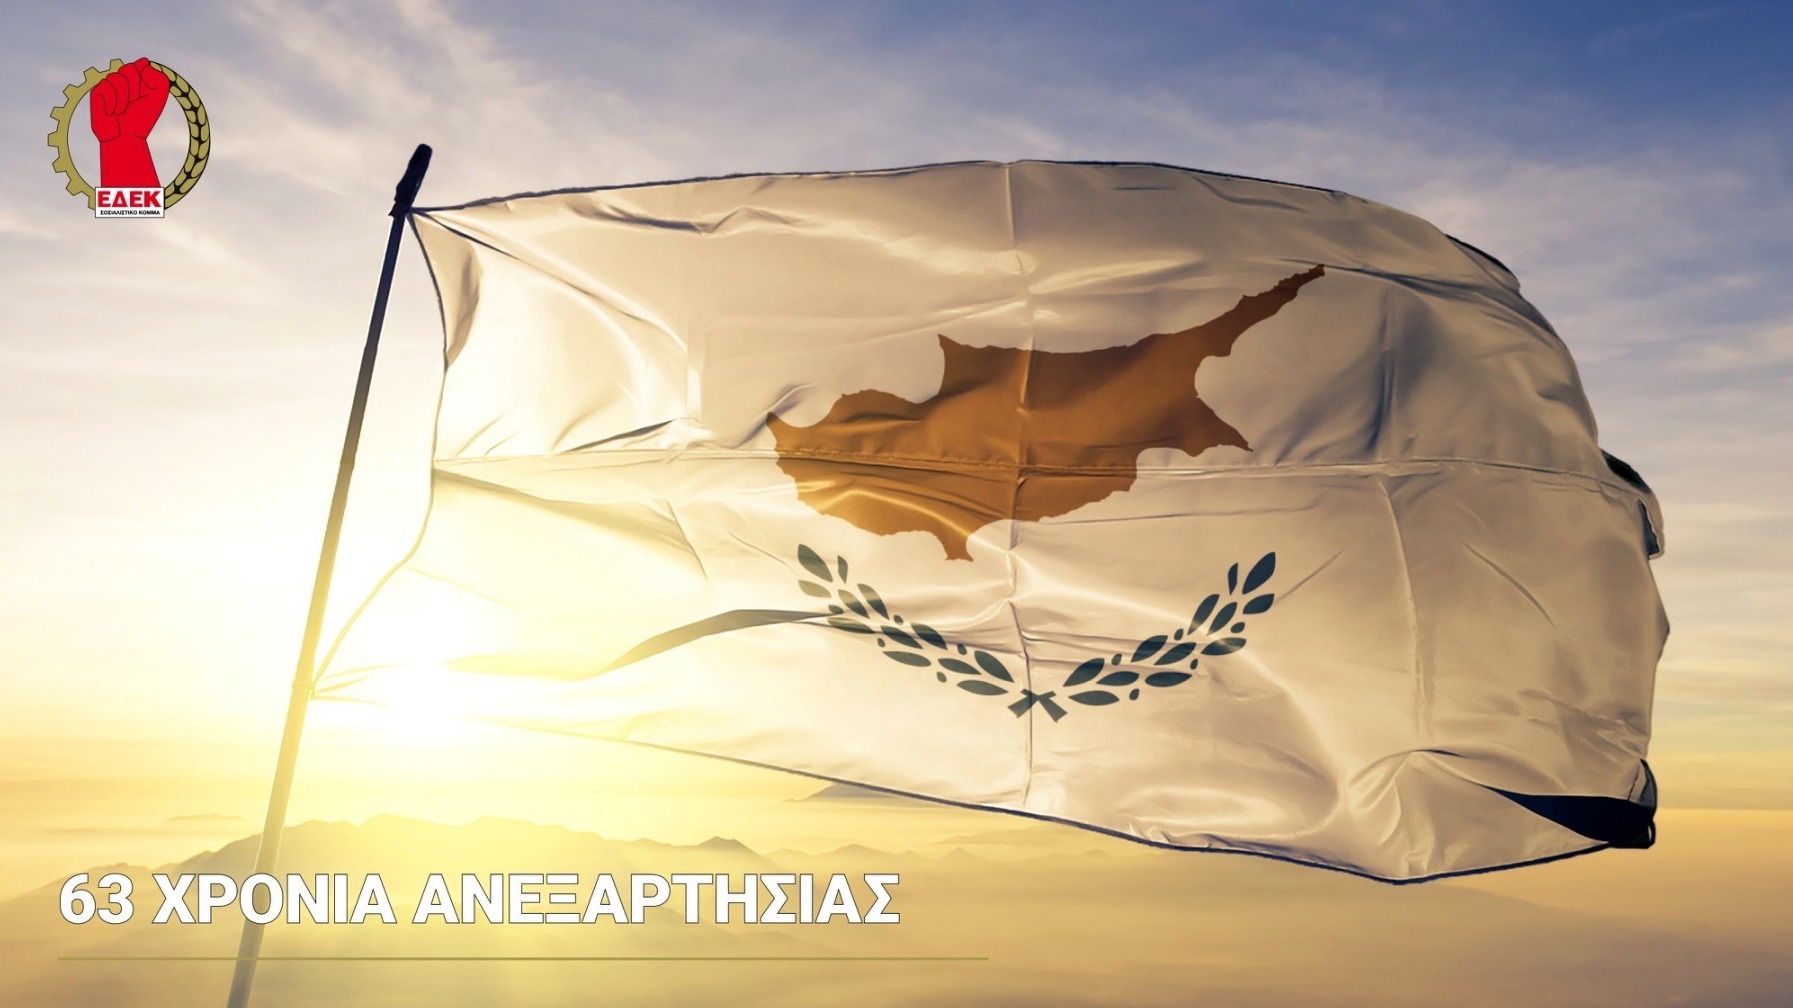 Η Κυπριακή Δημοκρατία αποτελεί το πιο ισχυρό όπλο που διαθέτουμε για την επίτευξη δημοκρατικής, λειτουργικής και βιώσιμης λύσης στο Κυπριακό